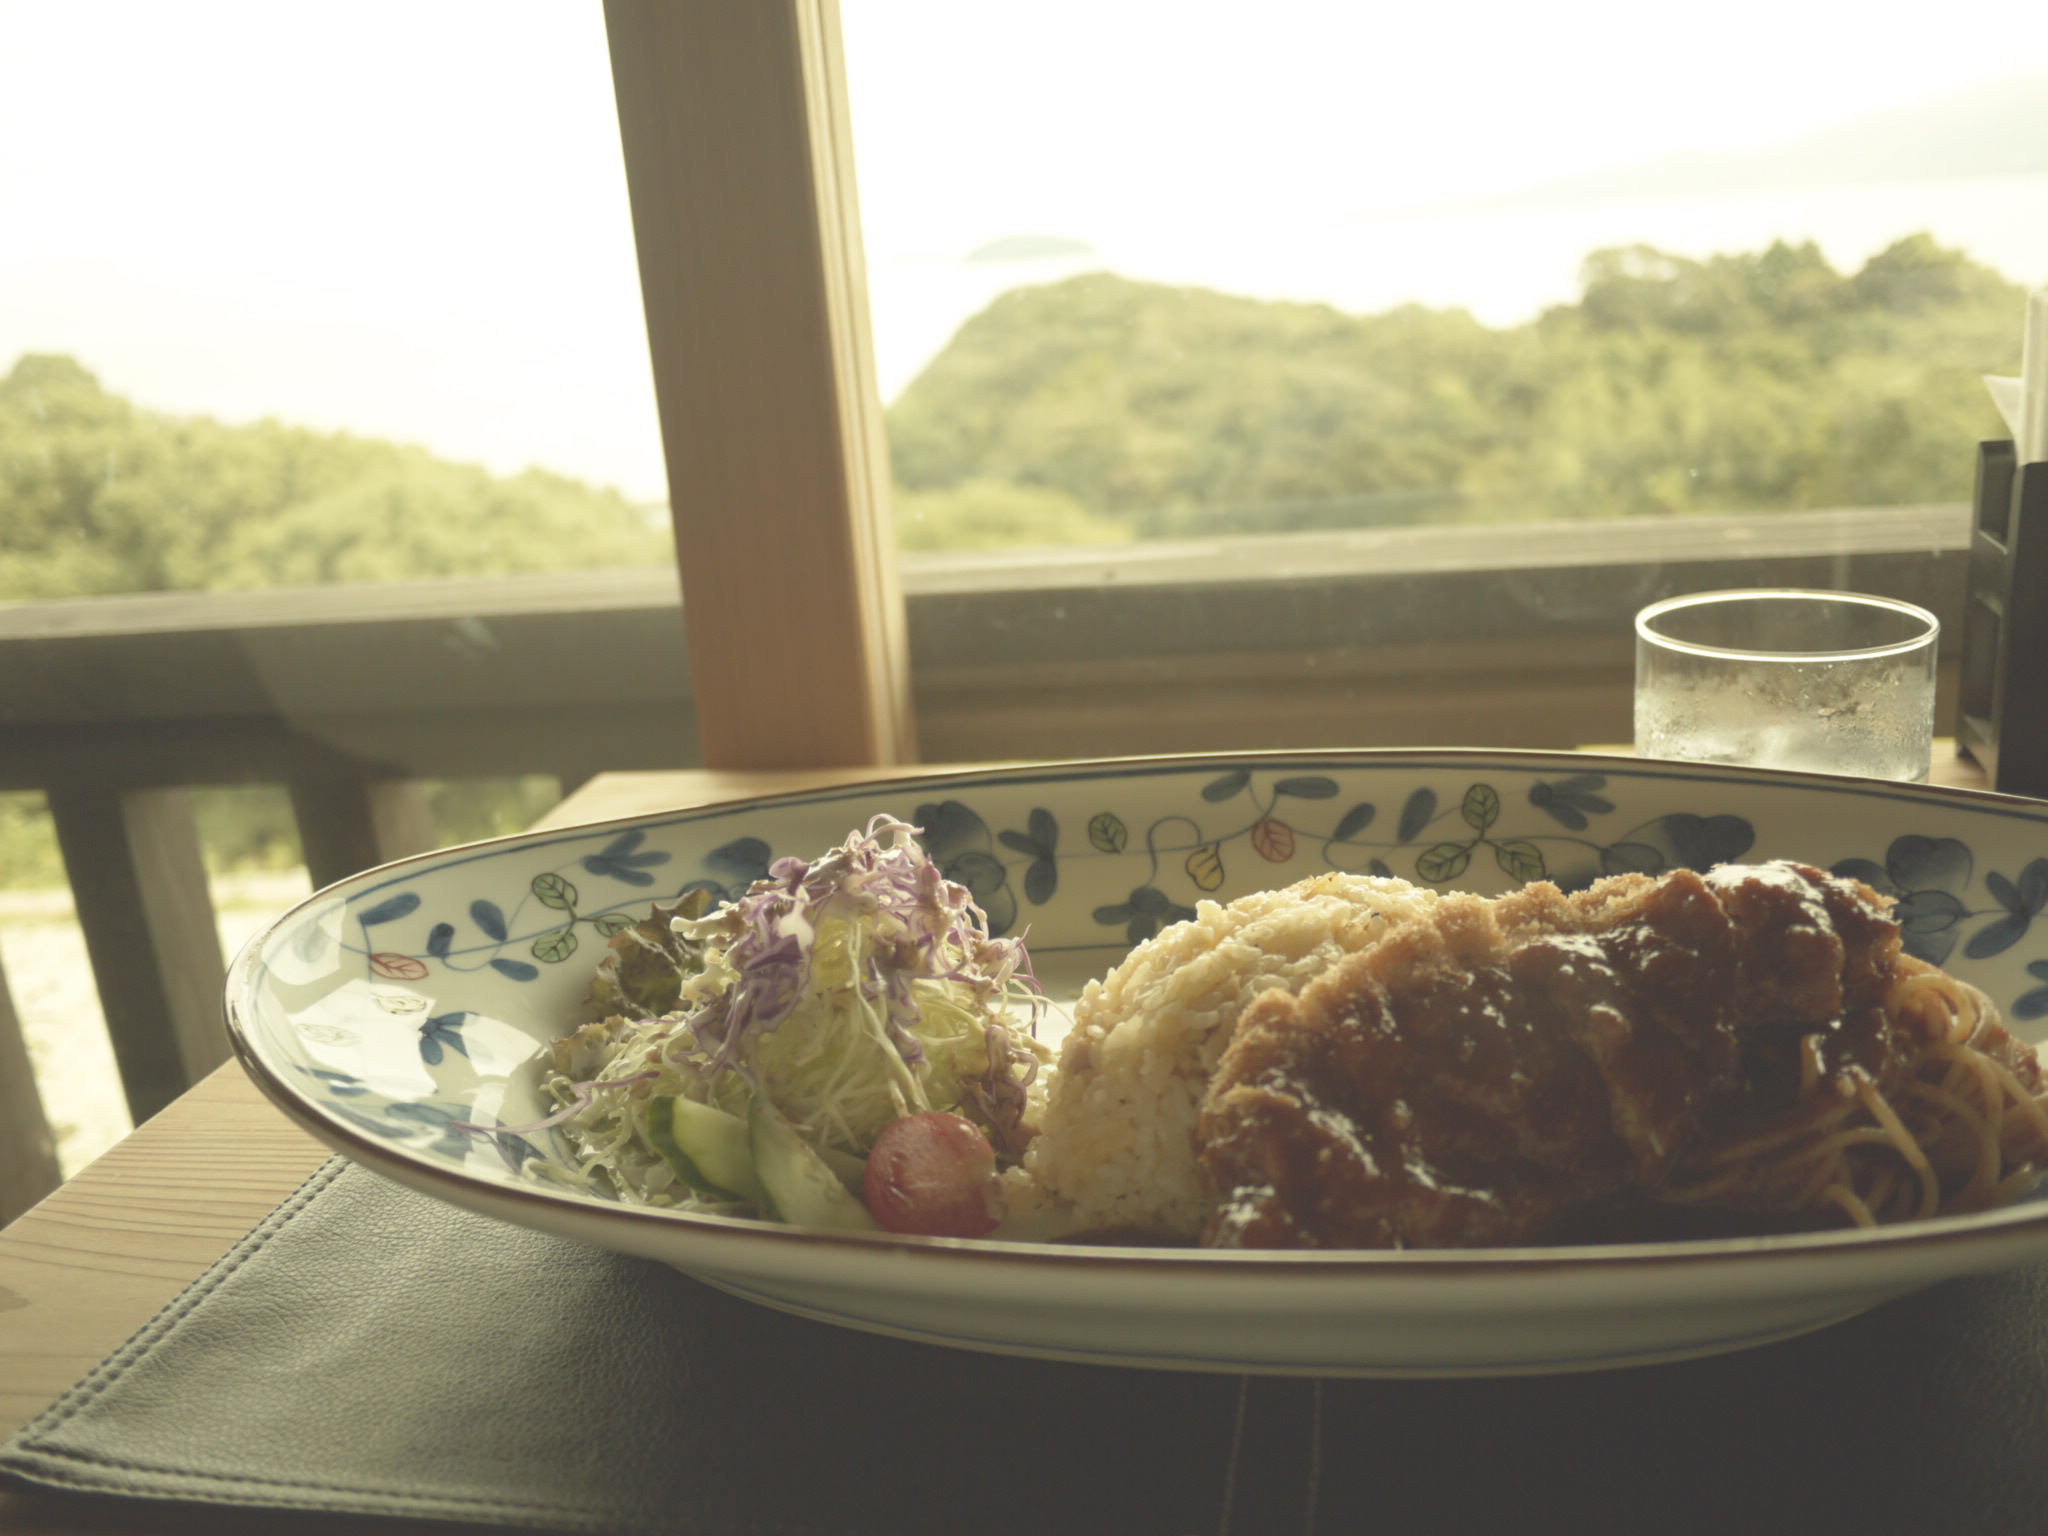 デートにもてなしに 長崎の絶景ランチ カフェのおすすめサクッとまとめときました 猫町飯店の休日